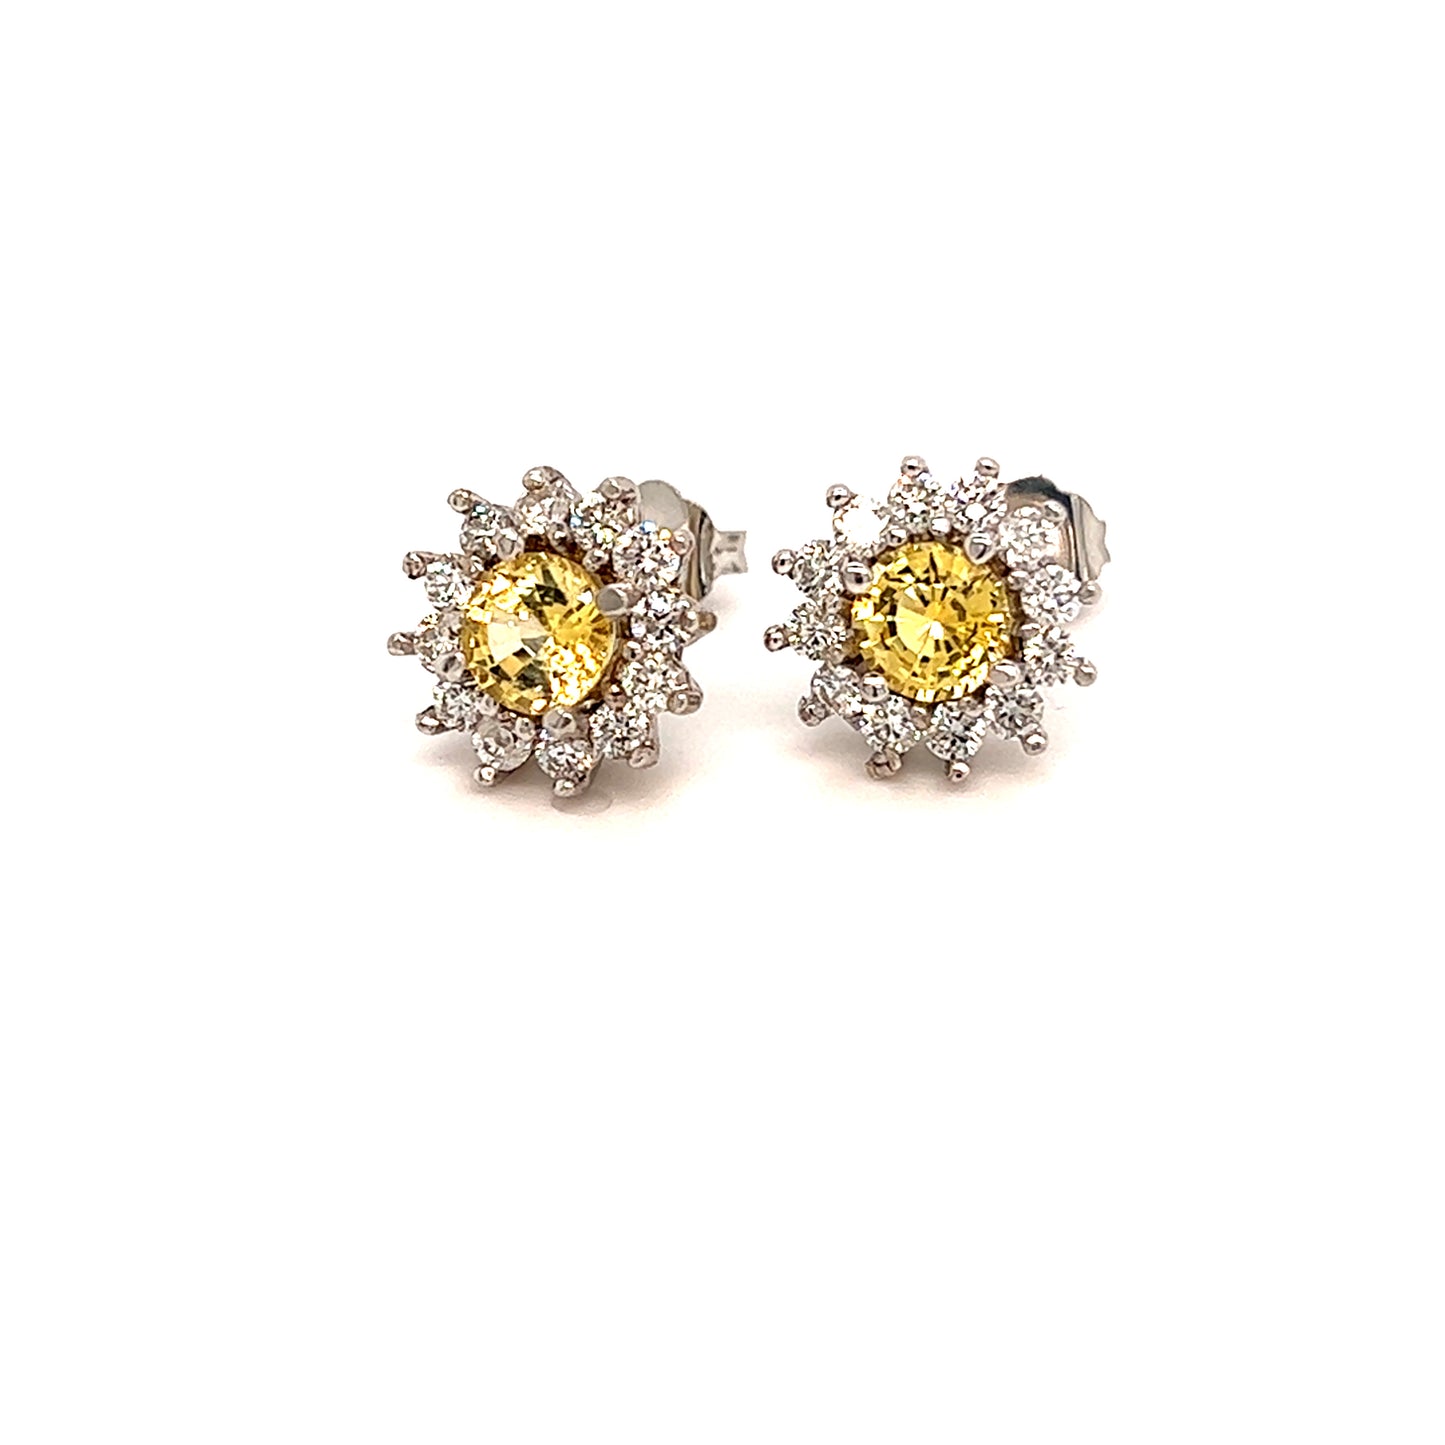 Natural Sapphire Diamond Stud Earrings 14k Gold 2.91 TCW Certified $4,950 121264 - Certified Fine Jewelry